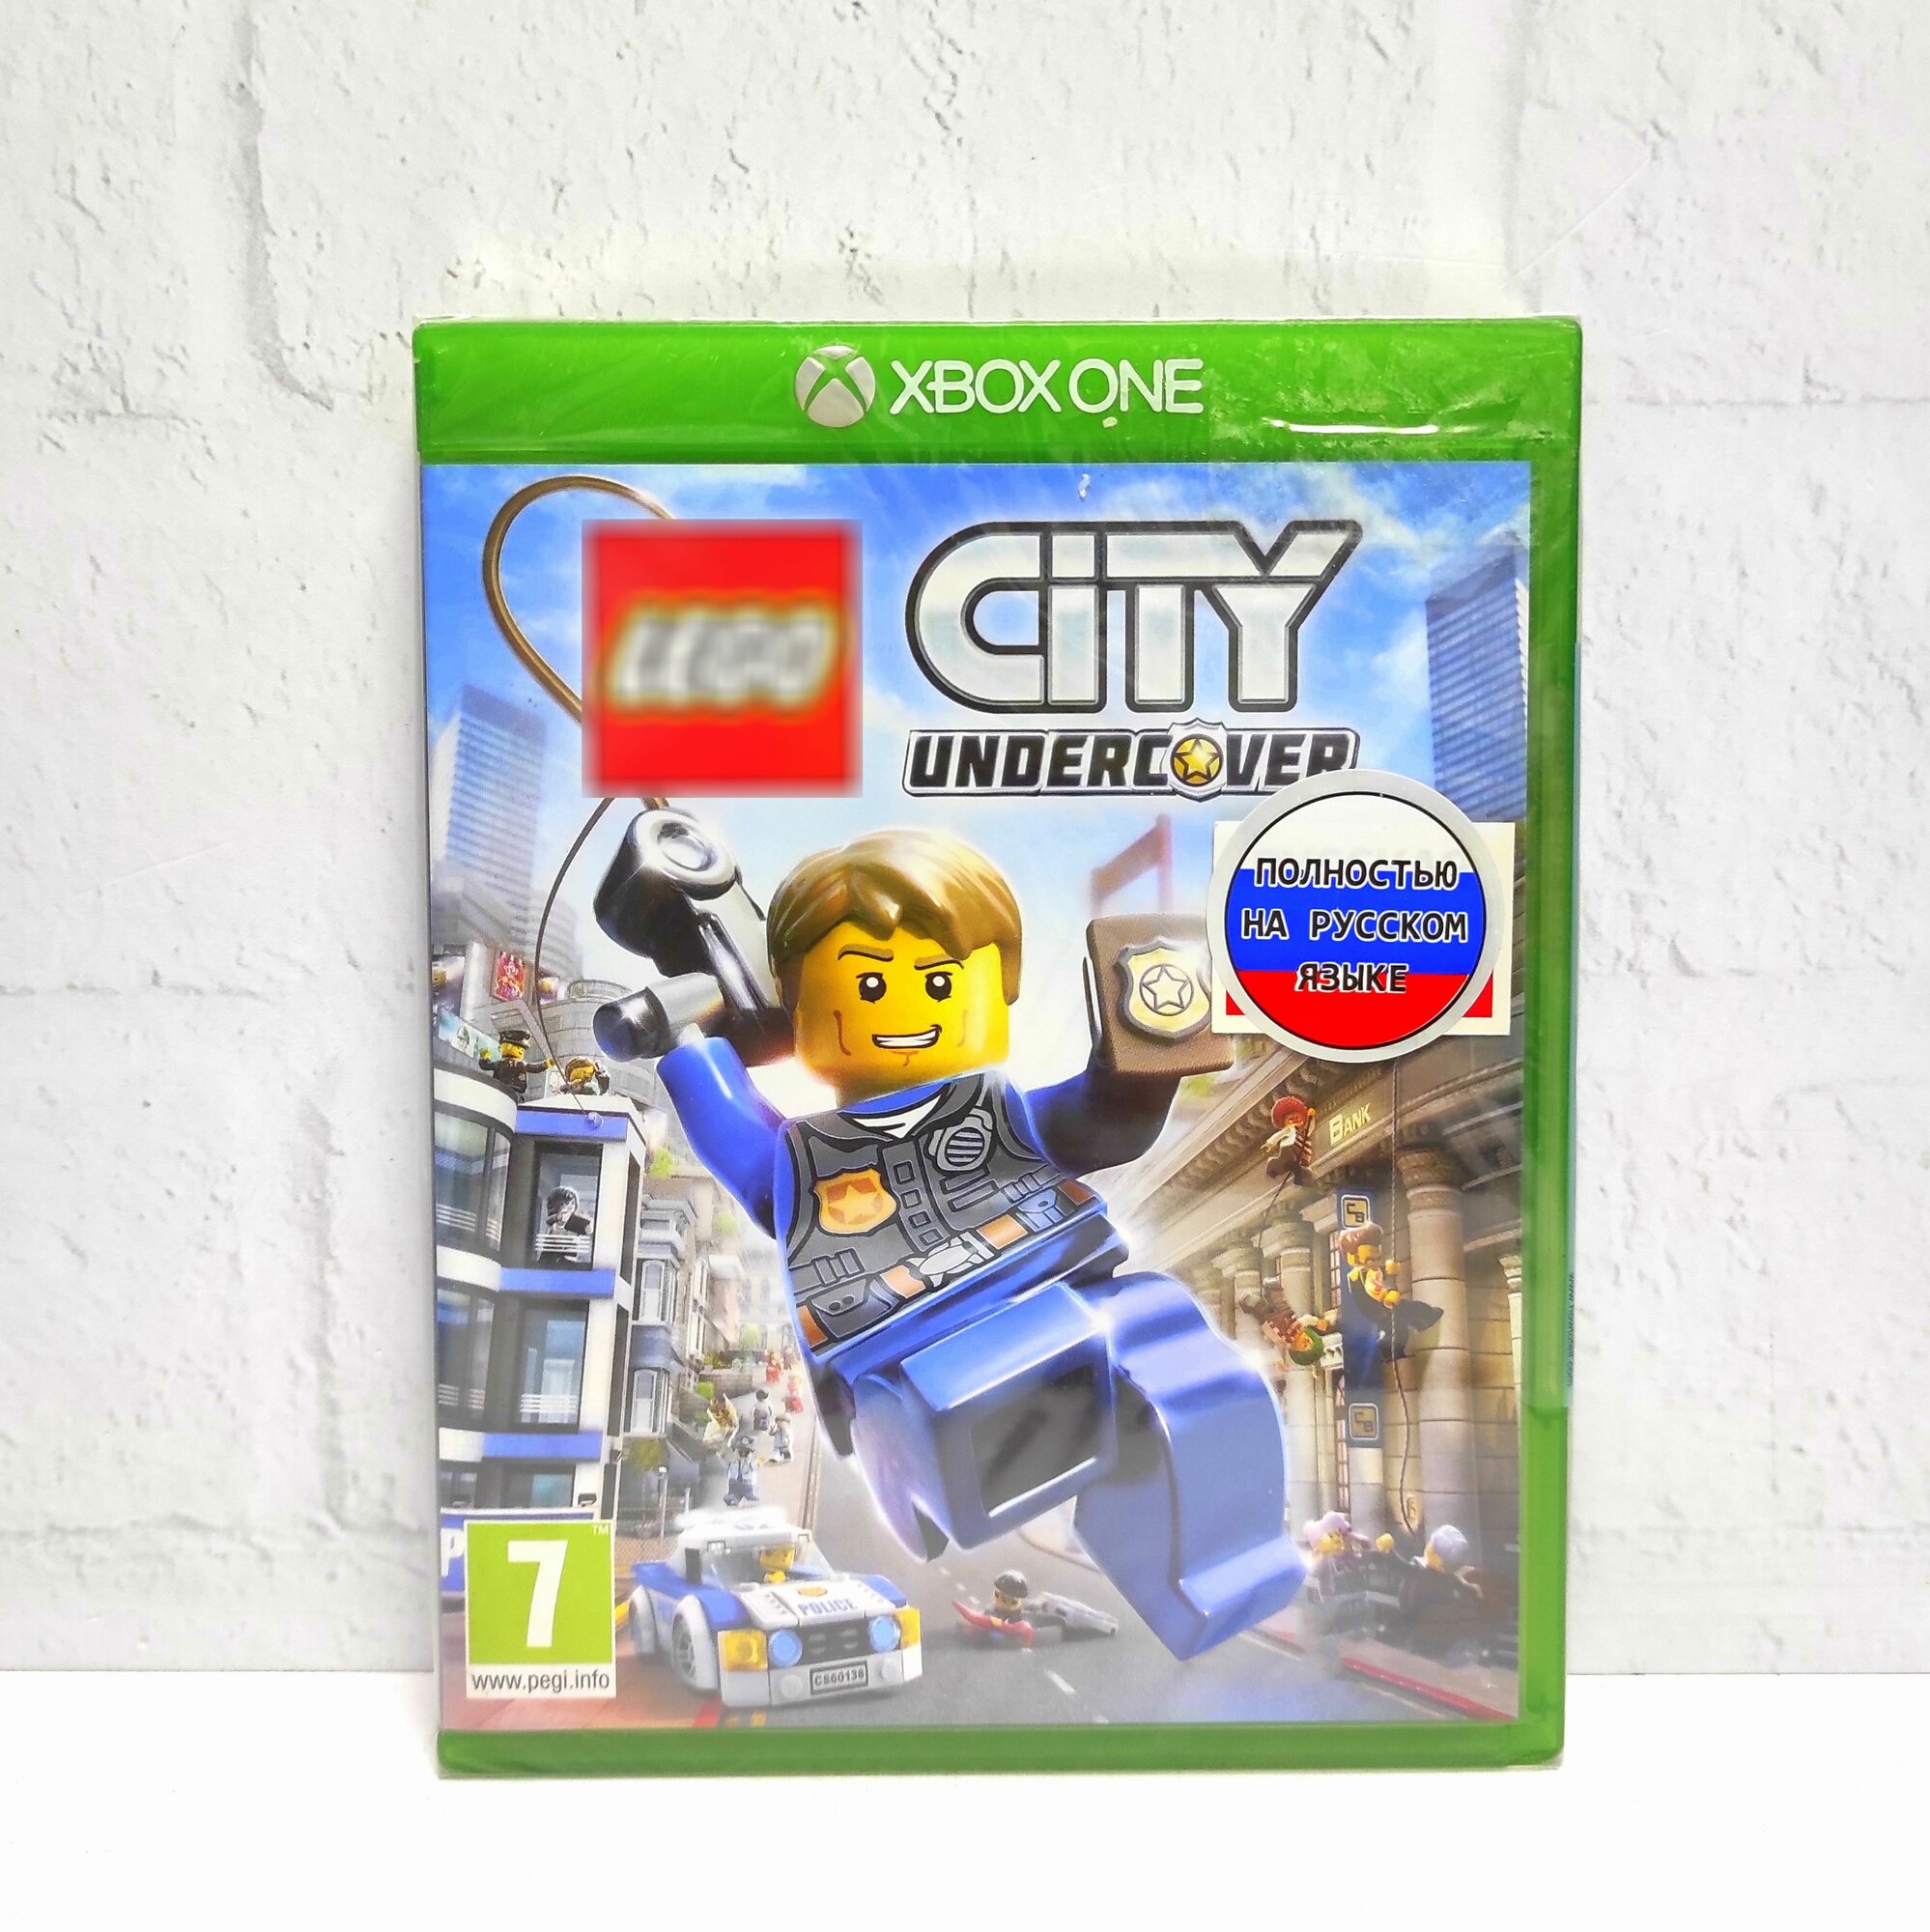 LEGO City Undercover Полностью на русском Видеоигра на диске Xbox One / Series